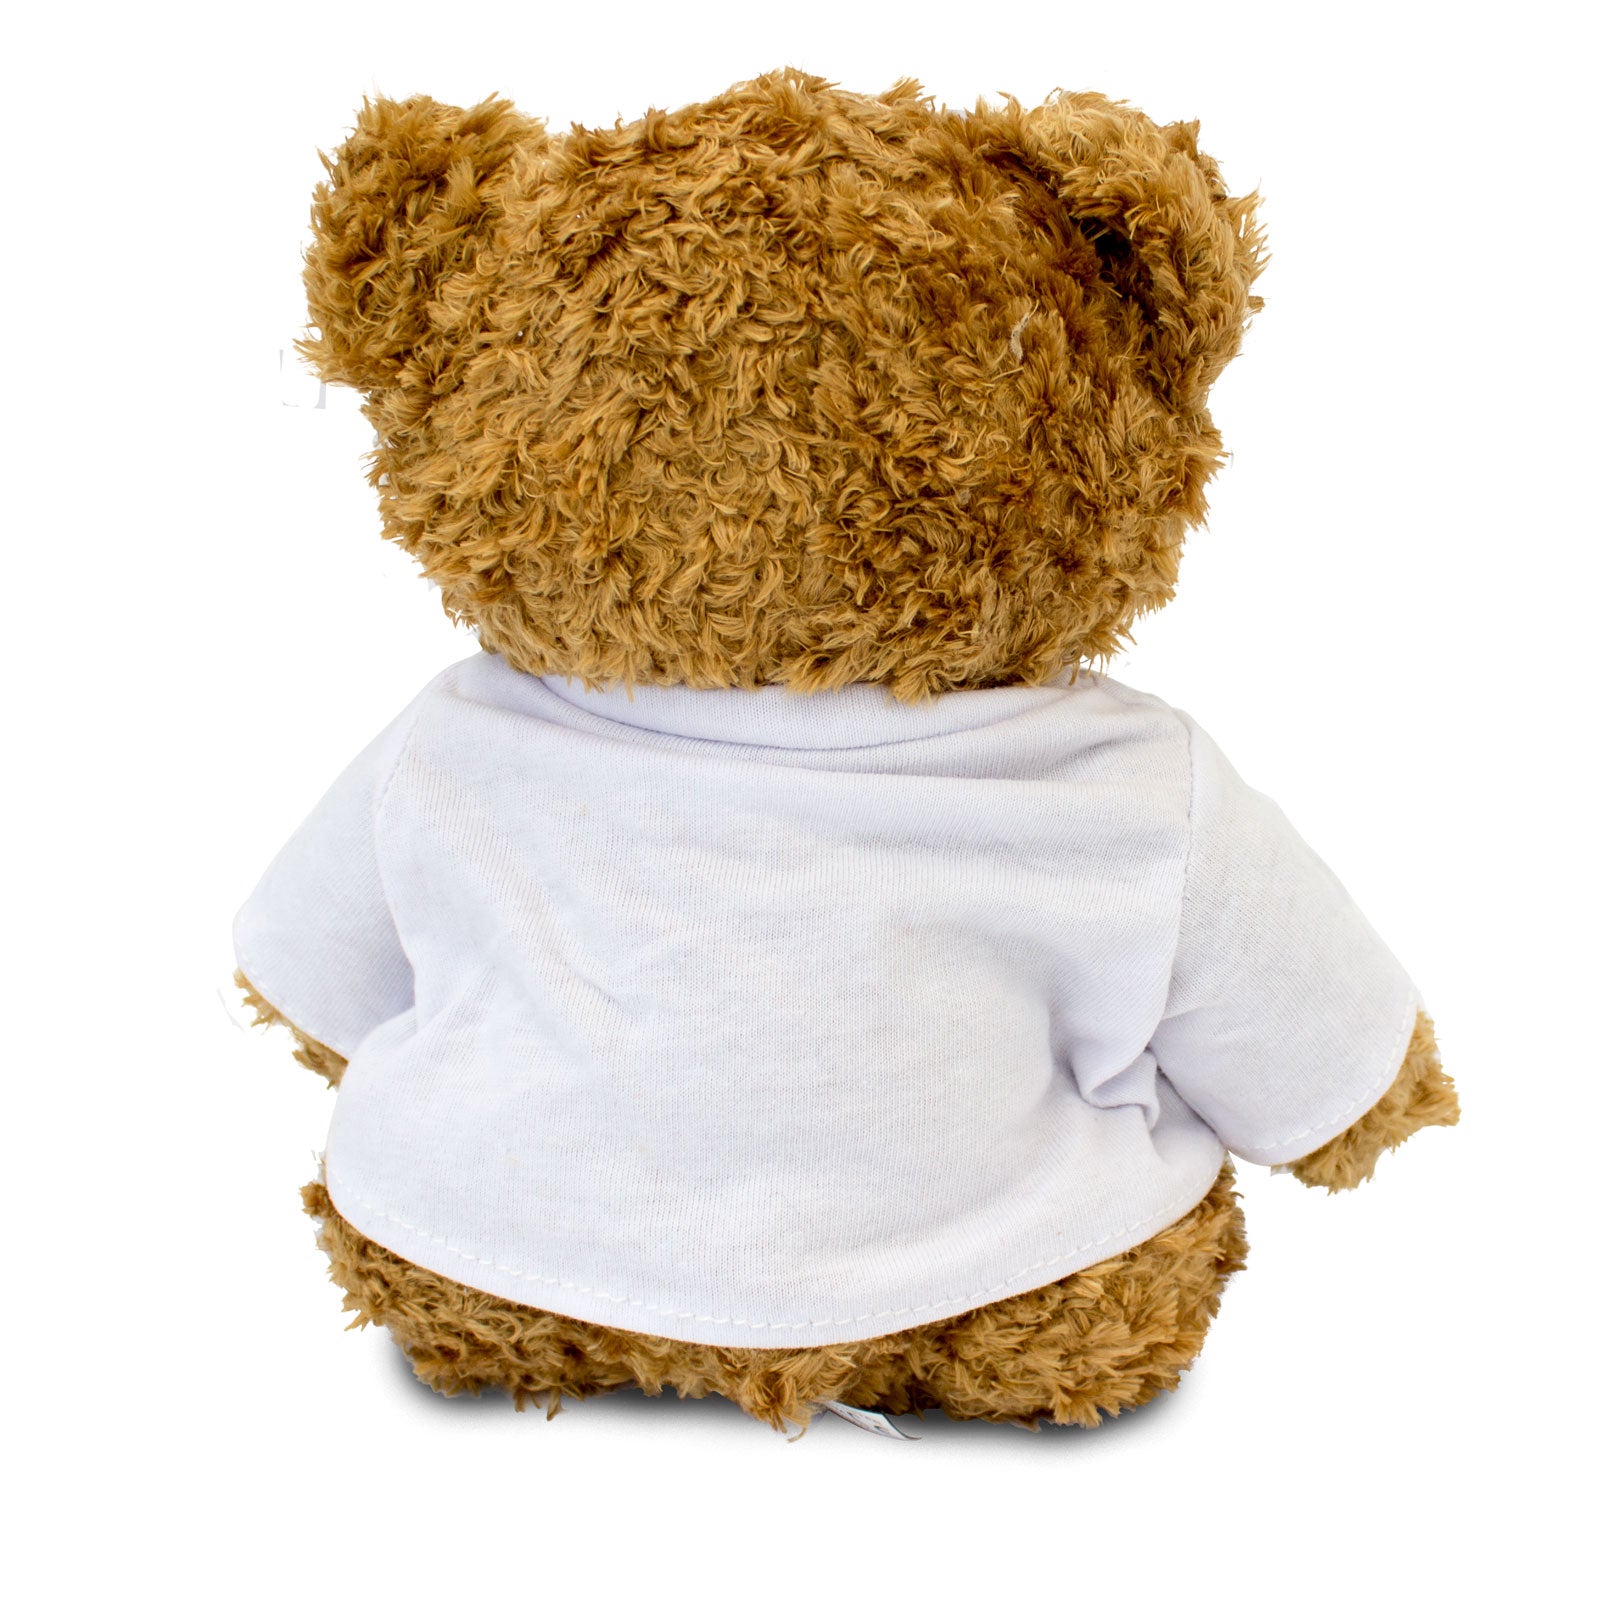 Get Well Soon Eduardo - Teddy Bear